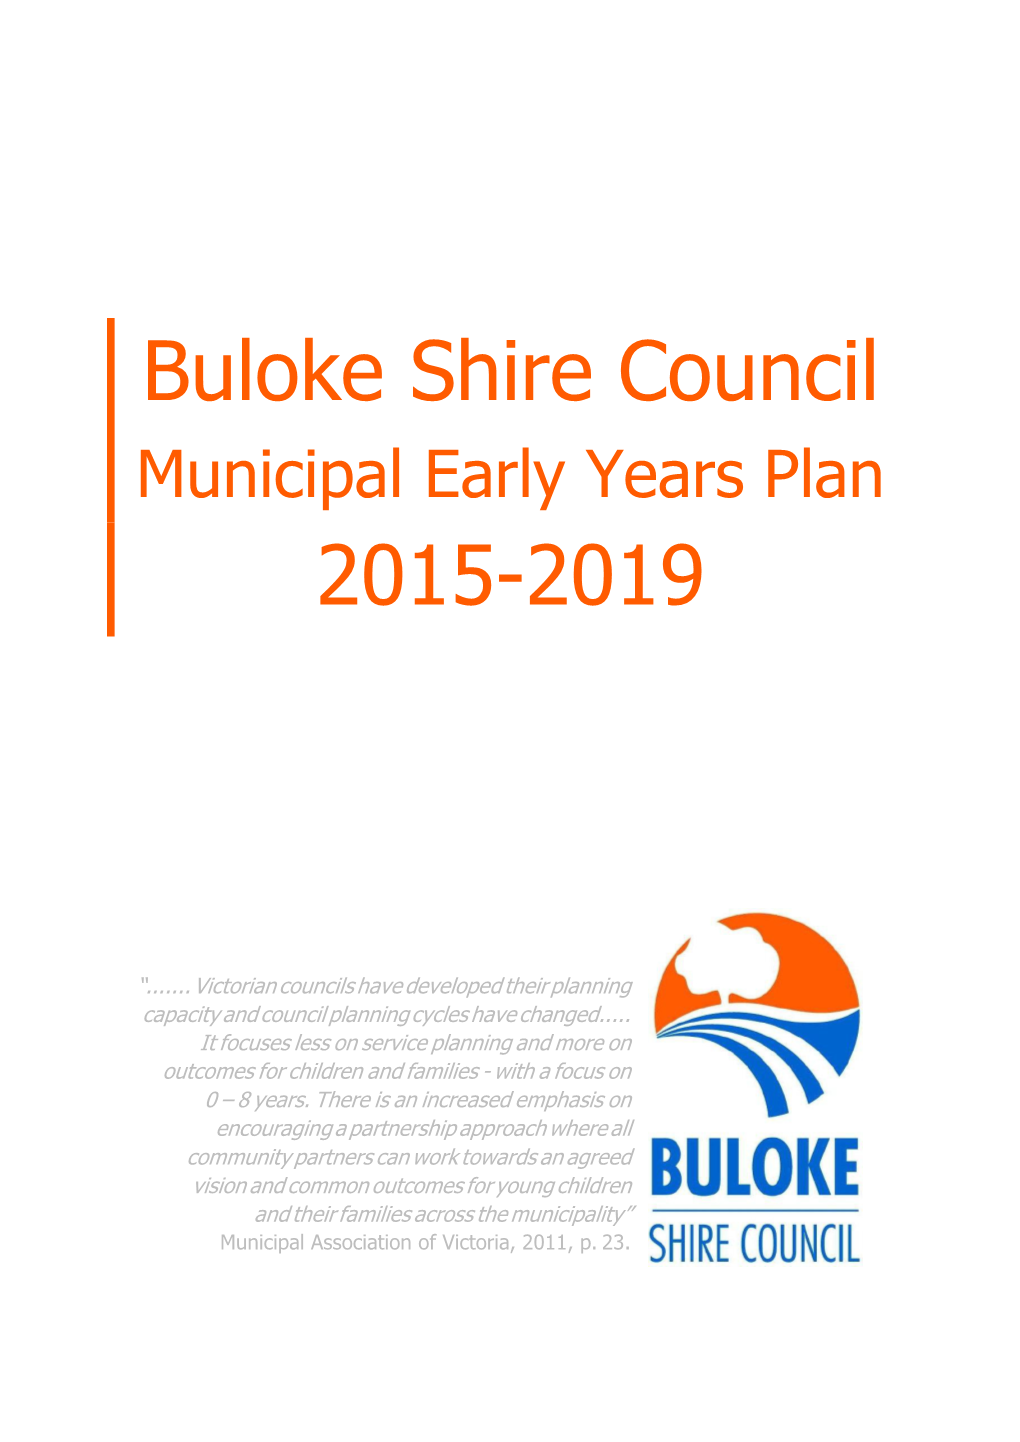 Municipal Early Years Plan 2015-2019